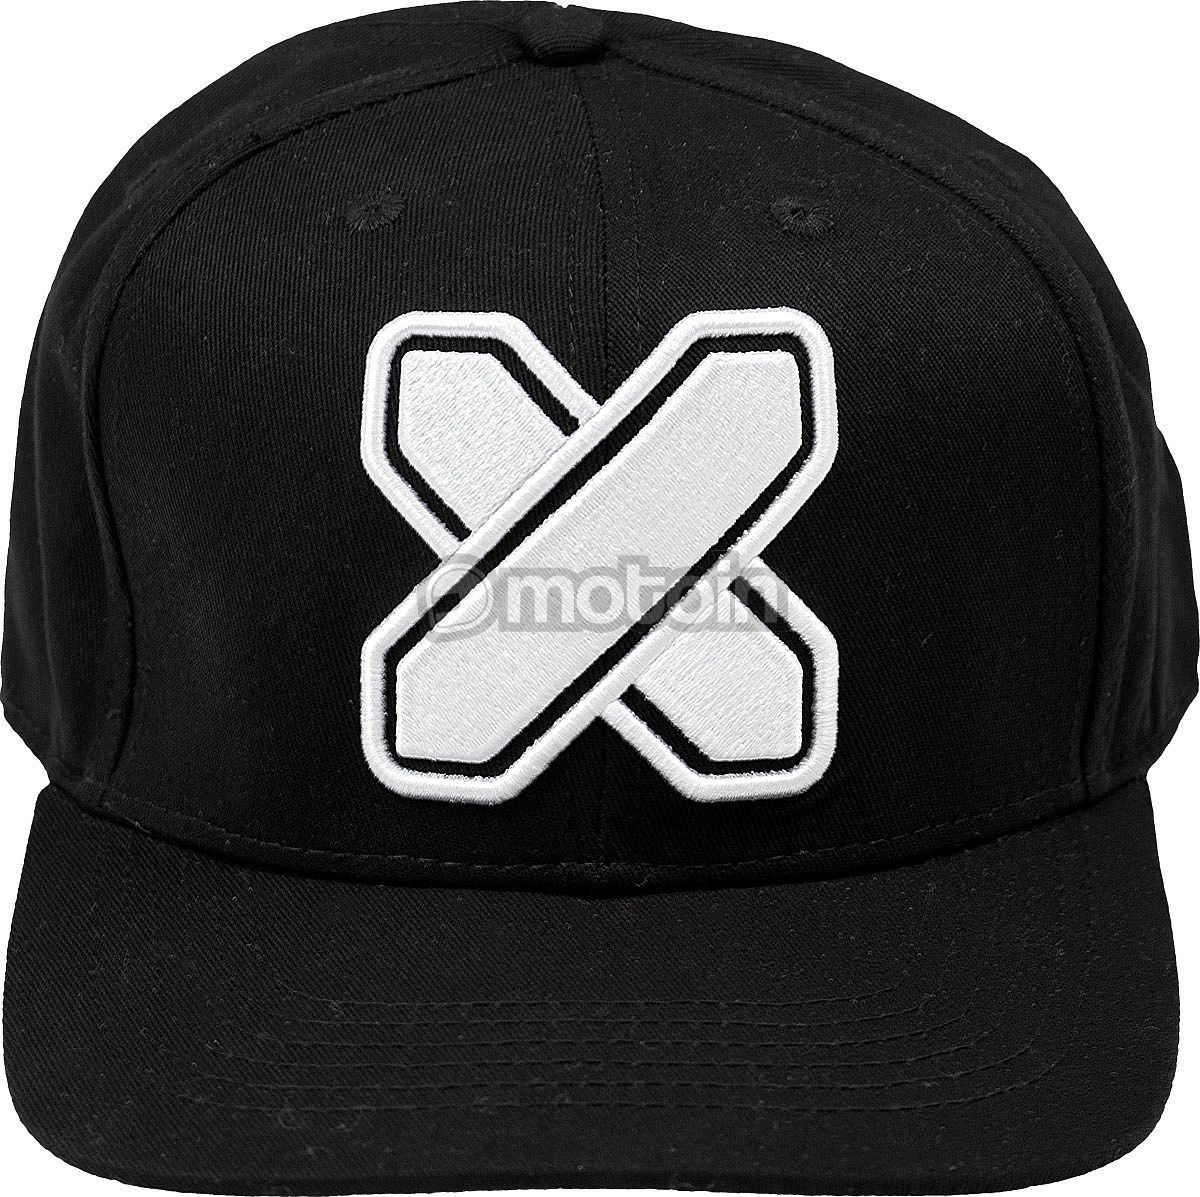 Shoei Logo X, cap